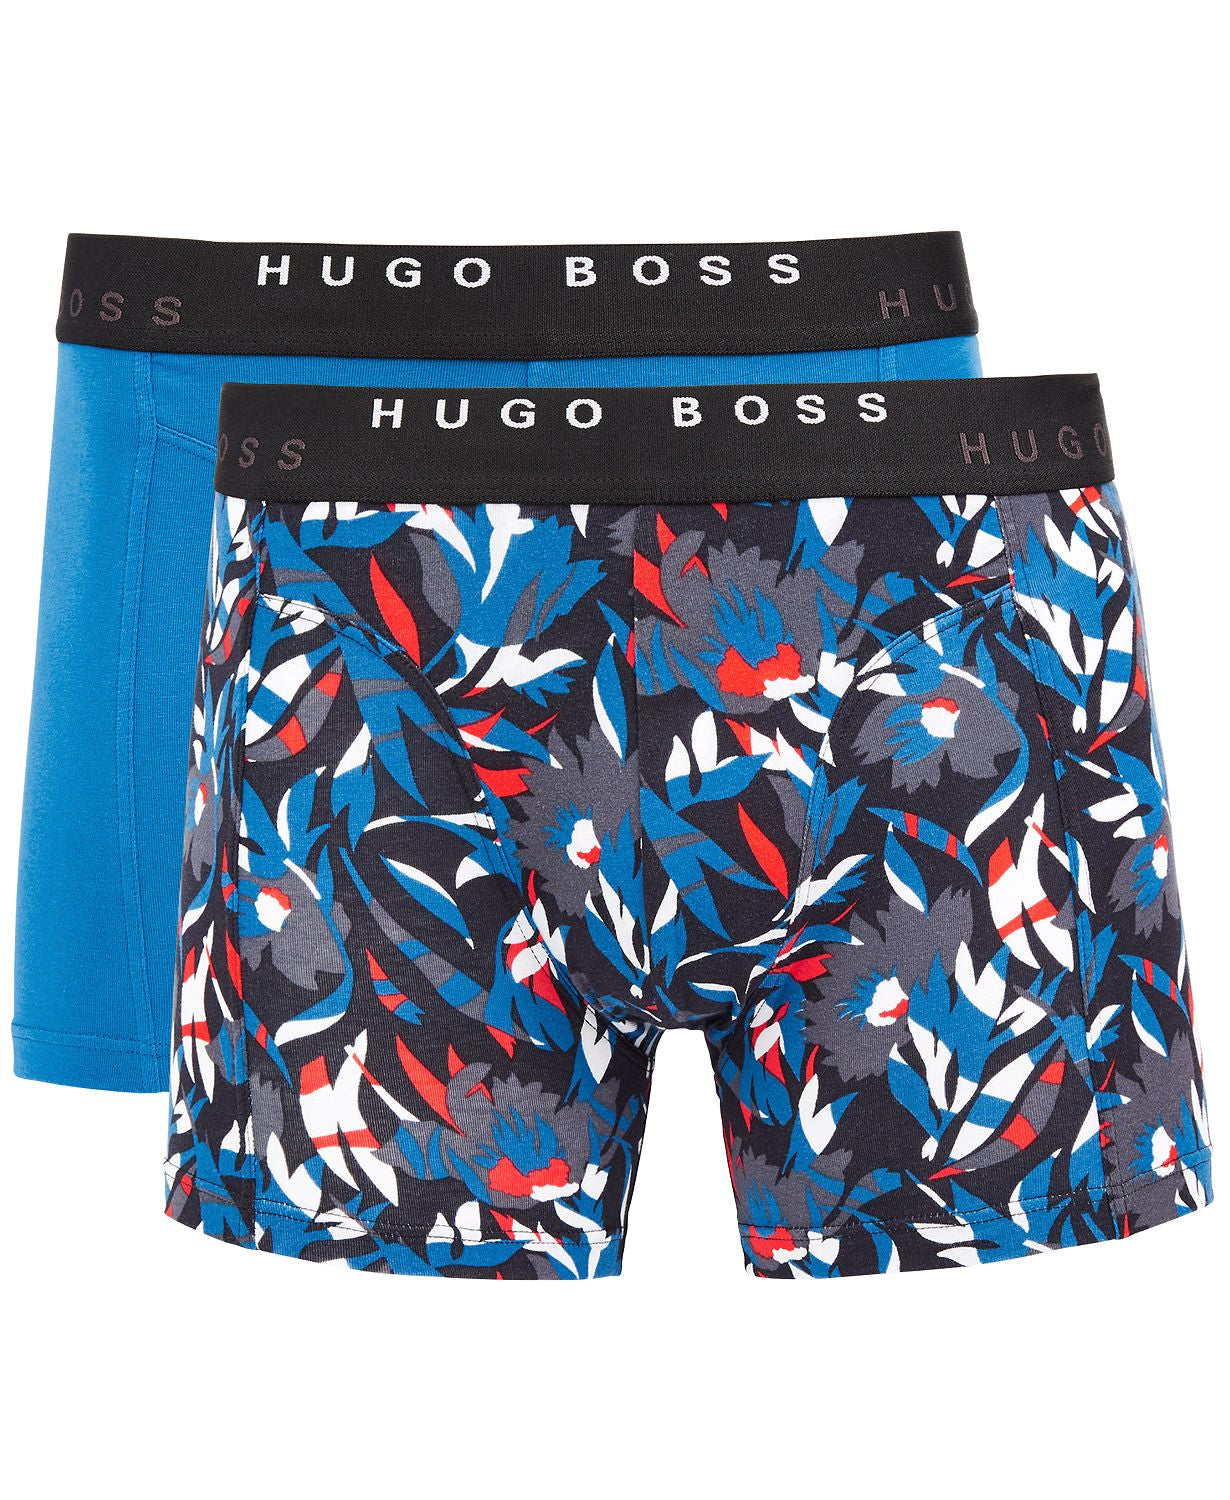 Hugo Boss Hugo 2-pk. Boxer Briefs Aqua